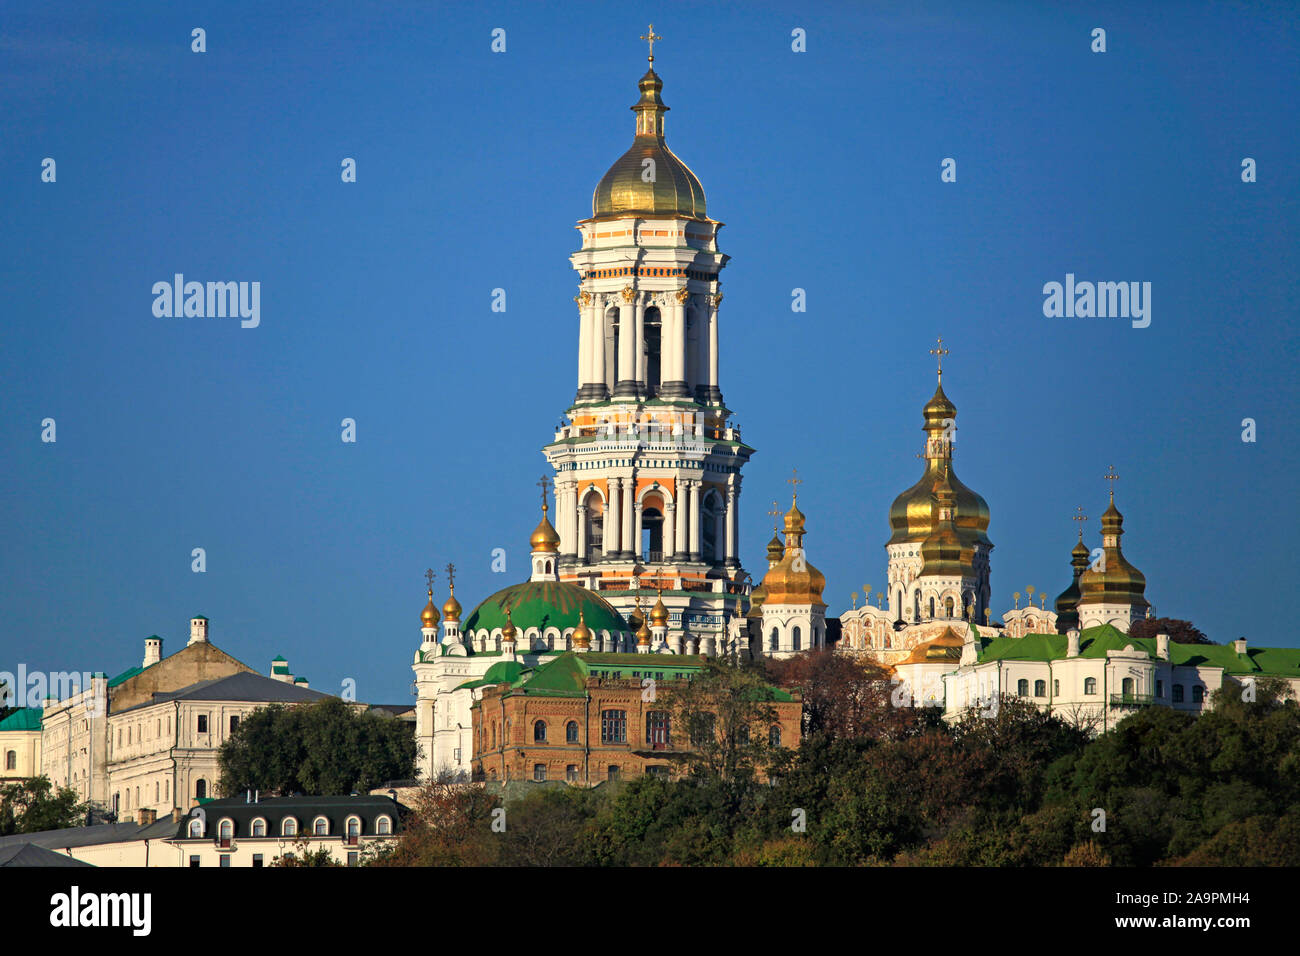 Illustri Centro spirituale dell'Ucraina. Kiev Pechersk (Kyiv Pechersk) Lavra monastero e la torre campanaria (grande torre campanaria) Foto Stock